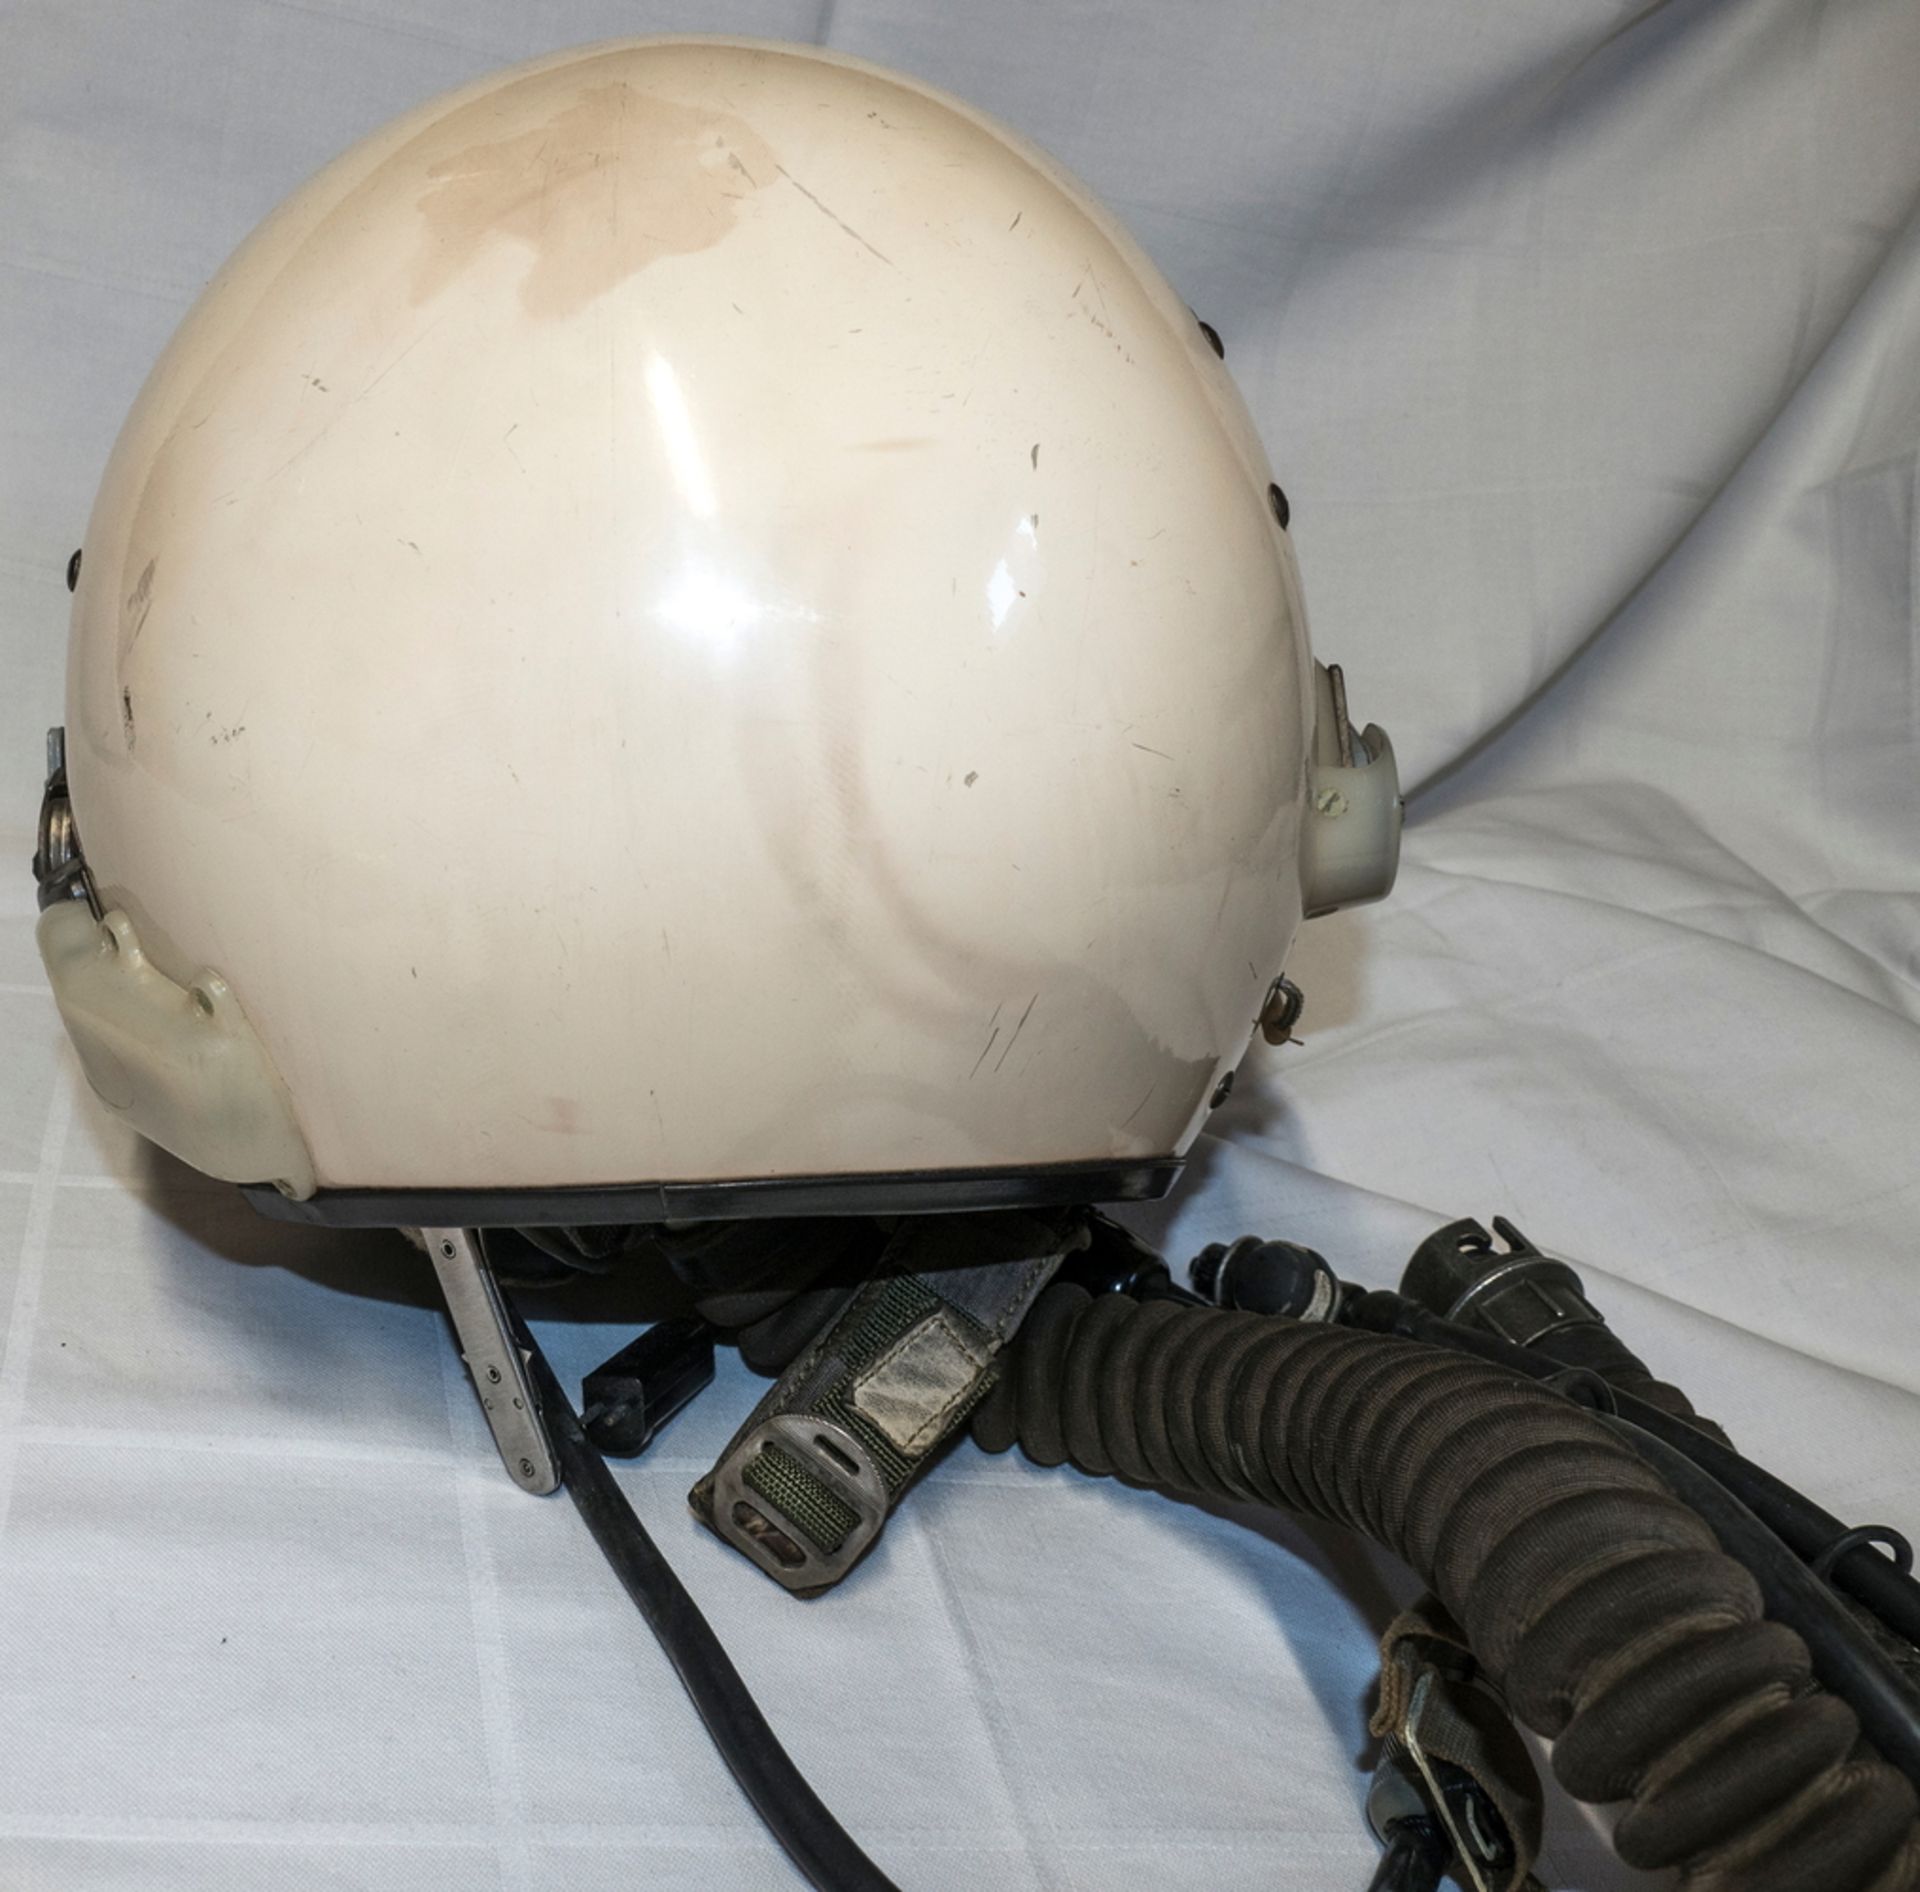 Pilotenhelm für Kampfjet - Piloten der sowjetischen Luftwaffe. Mit Sauerstoffmaske, Anschlüssen, - Image 4 of 6